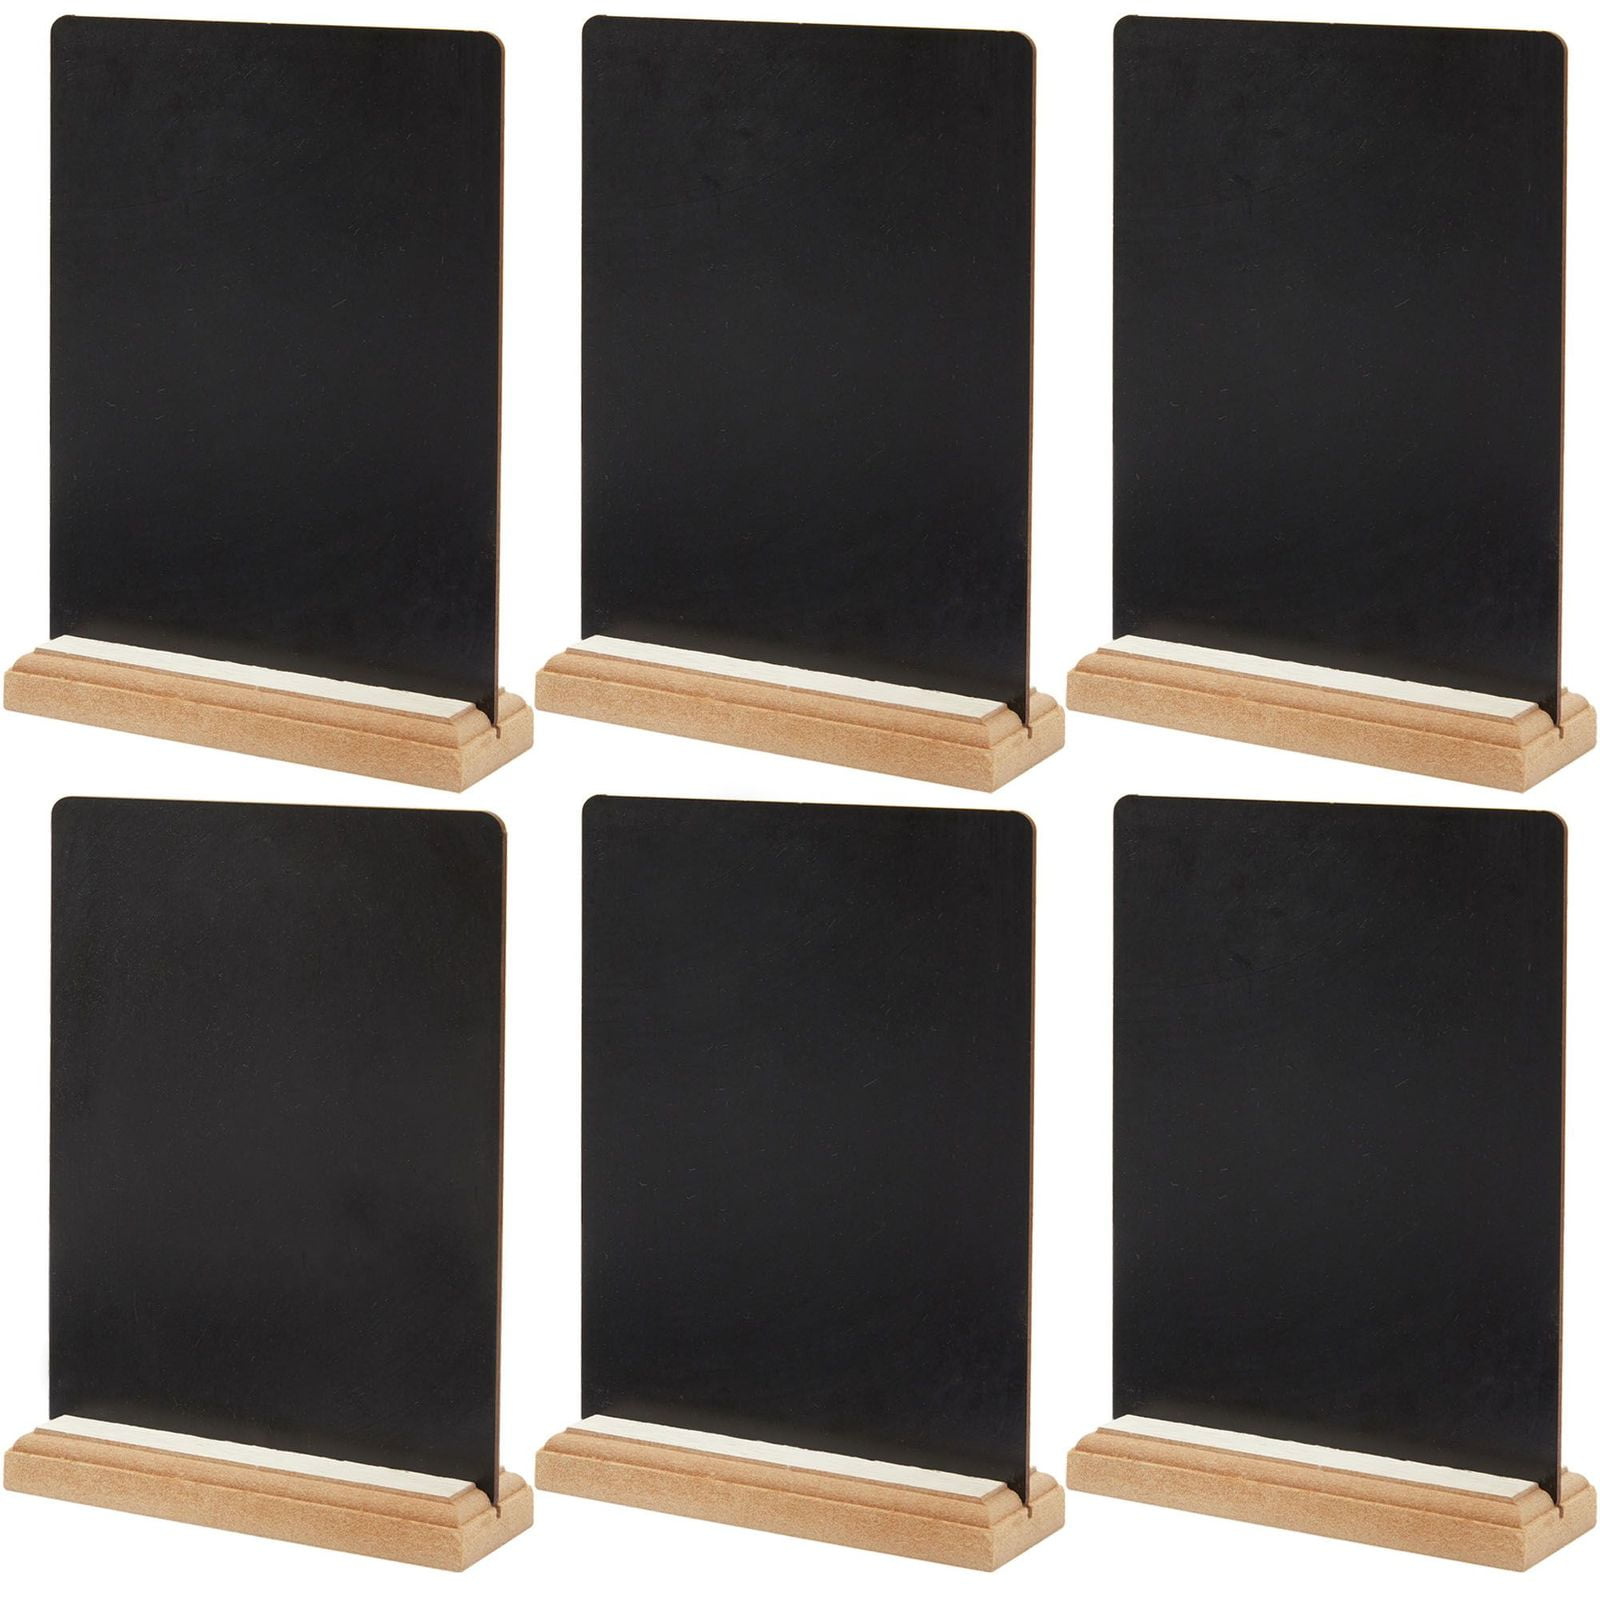 10pcs Mini Blackboard Wooden Signs Hanging Chalkboard Message Board Memo Gifts 